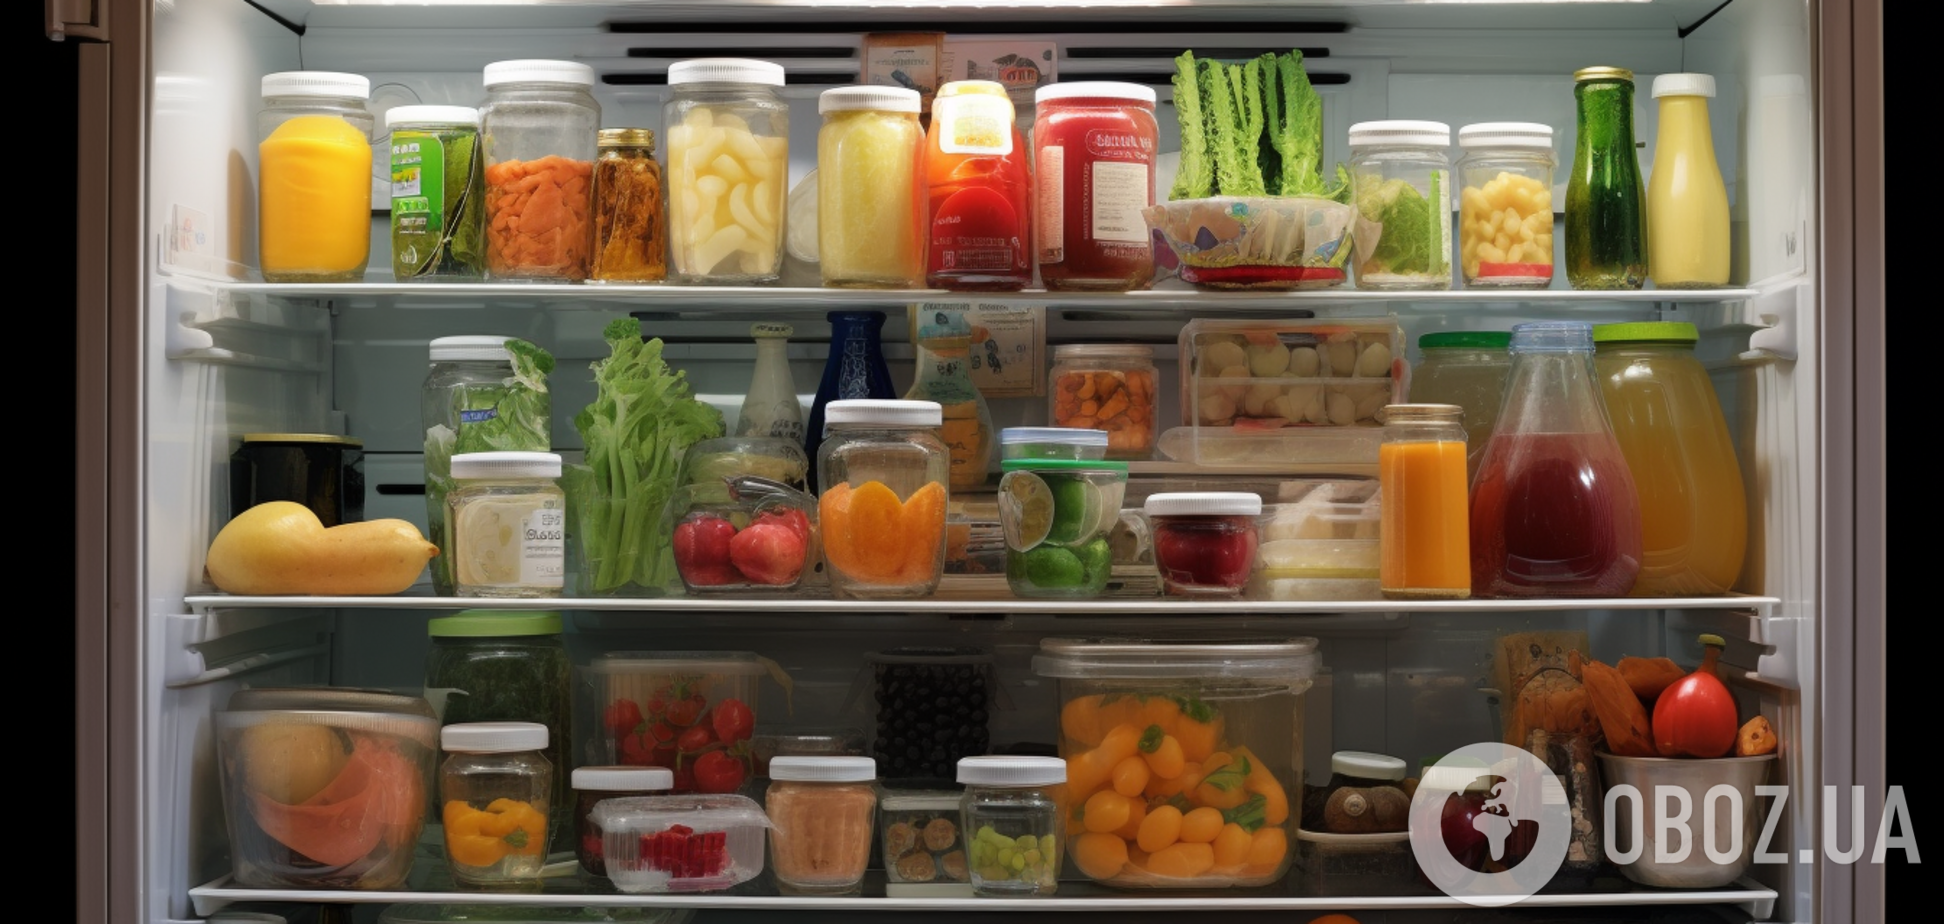 Як зберігати продукти у холодильнику: правила зонування